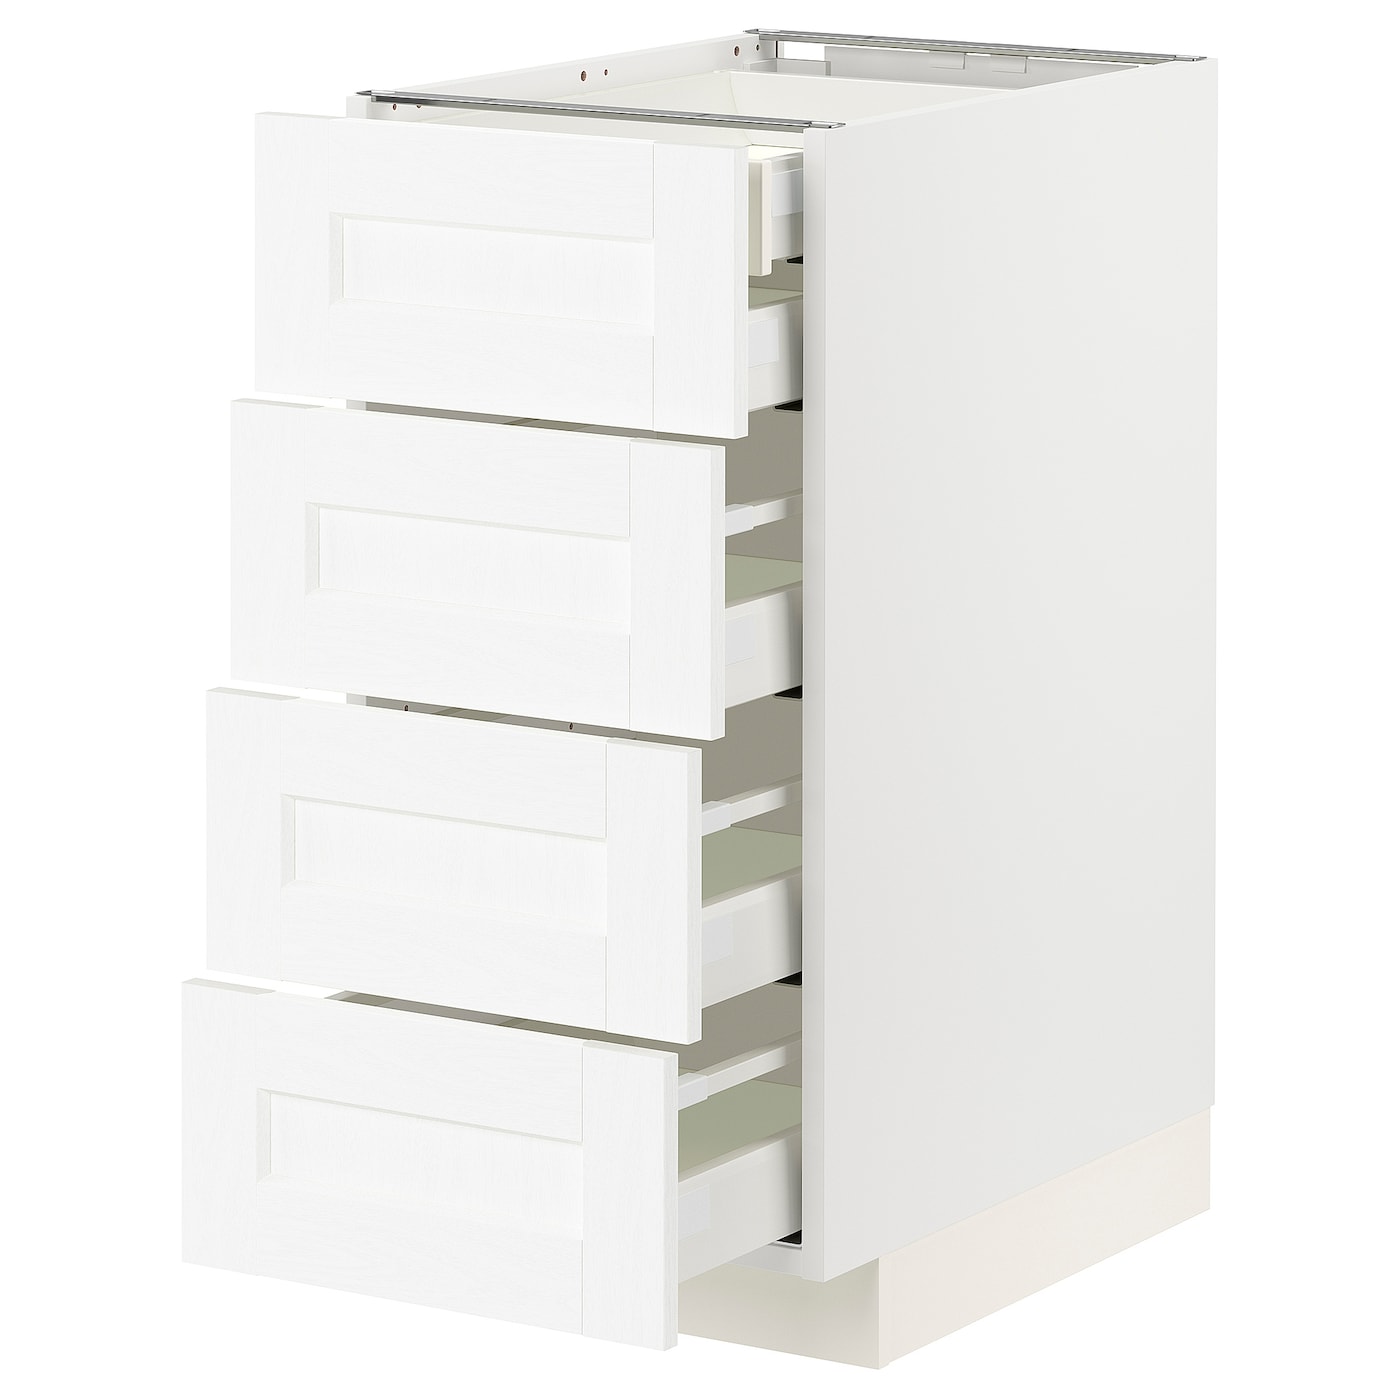 Напольный шкаф  - IKEA METOD MAXIMERA, 88x61,9x40см, белый, МЕТОД МАКСИМЕРА ИКЕА